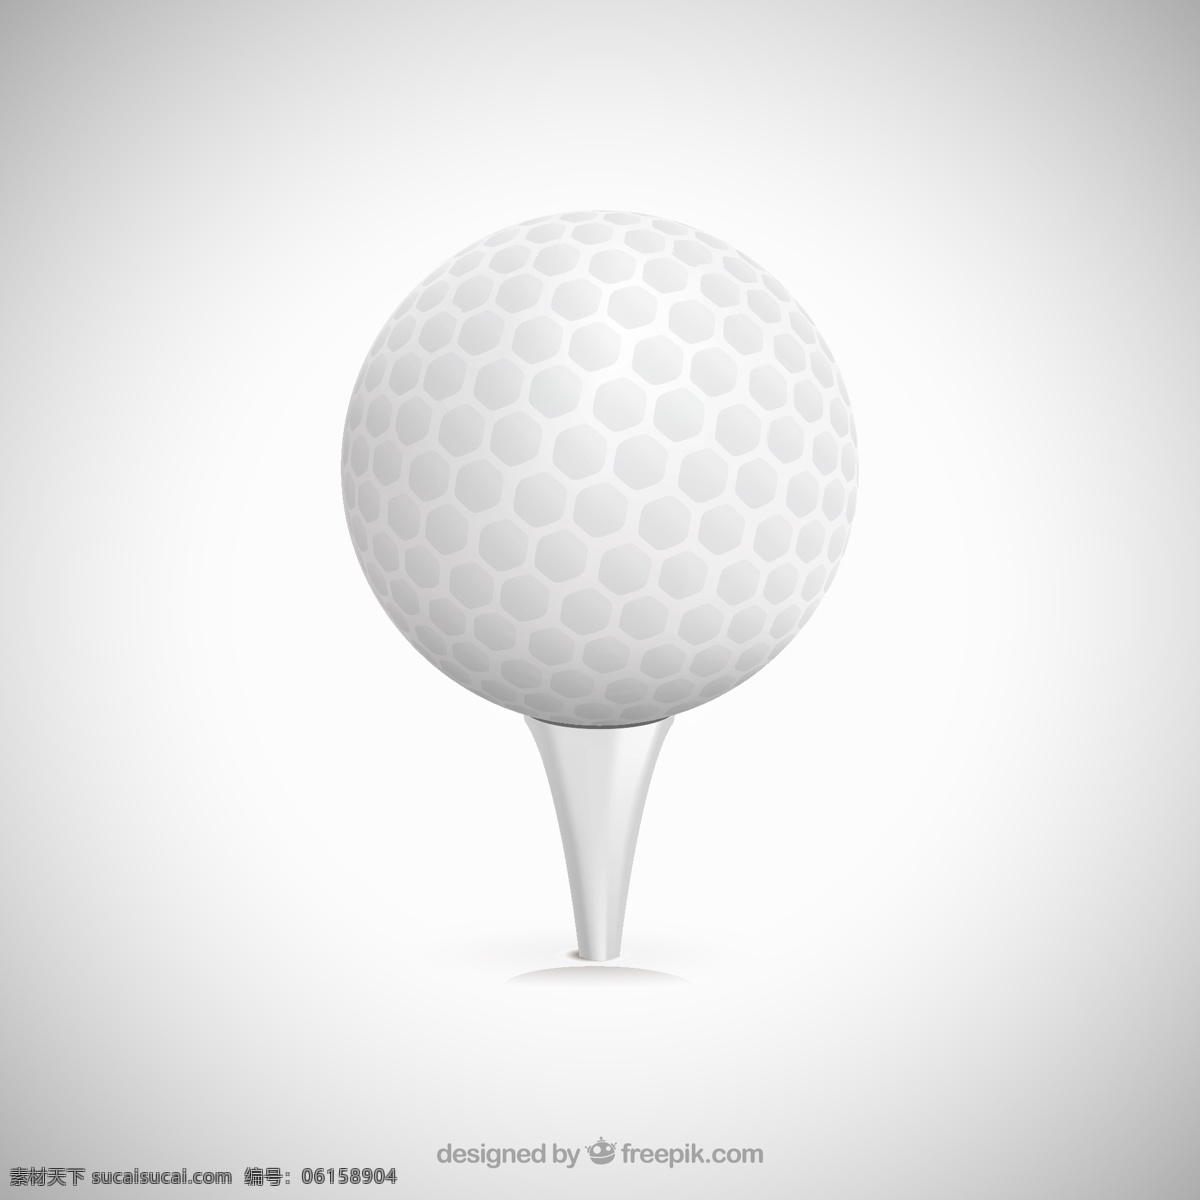 高尔夫球 矢量 高尔夫 体育 球具 矢量图 格式 高清图片